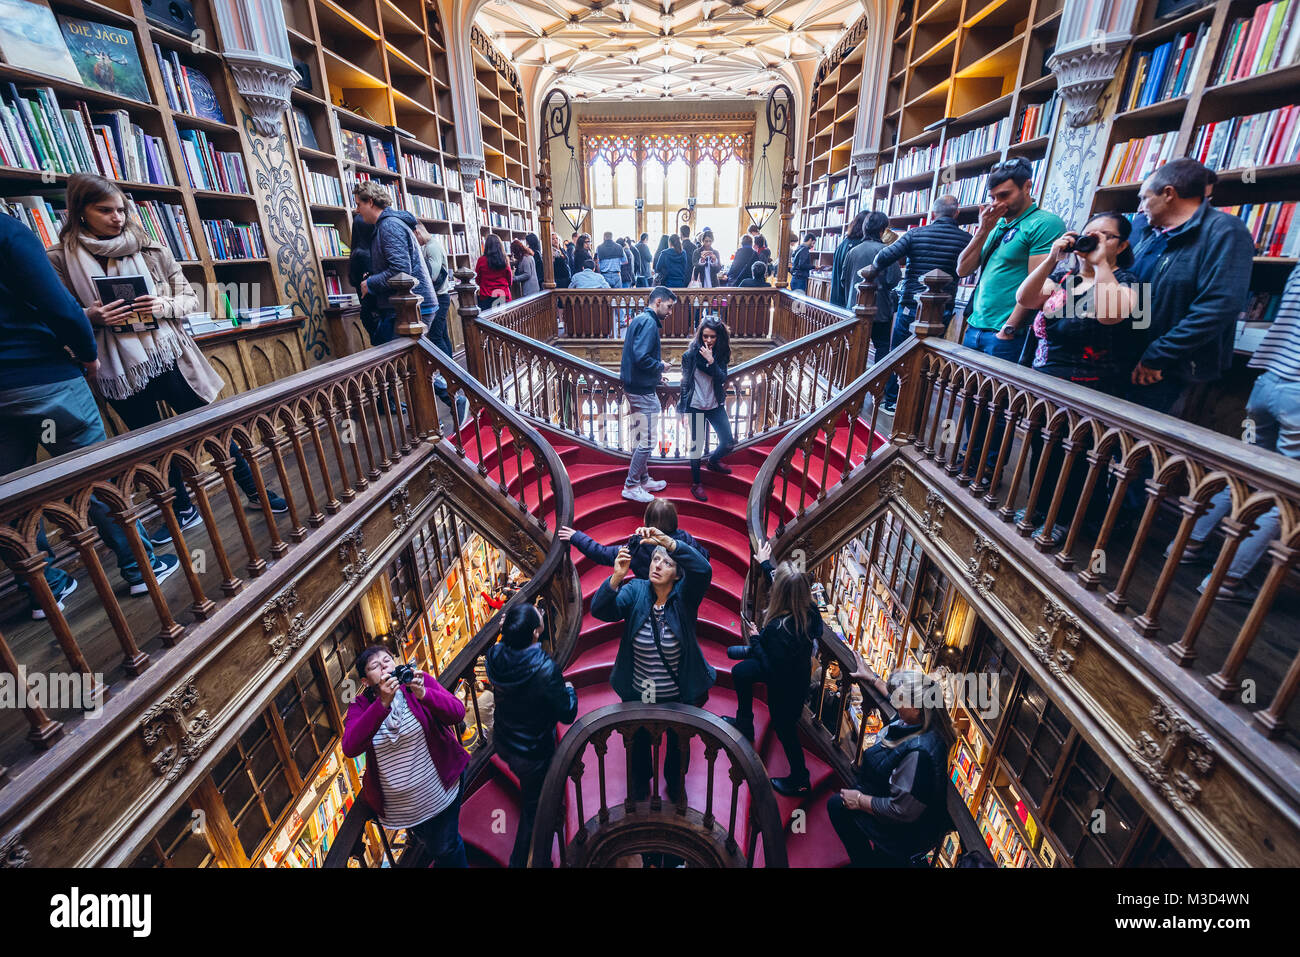 Intérieur de l'une des plus célèbres librairies dans le monde entier, la Livraria Lello dans la ville de Porto au Portugal Banque D'Images